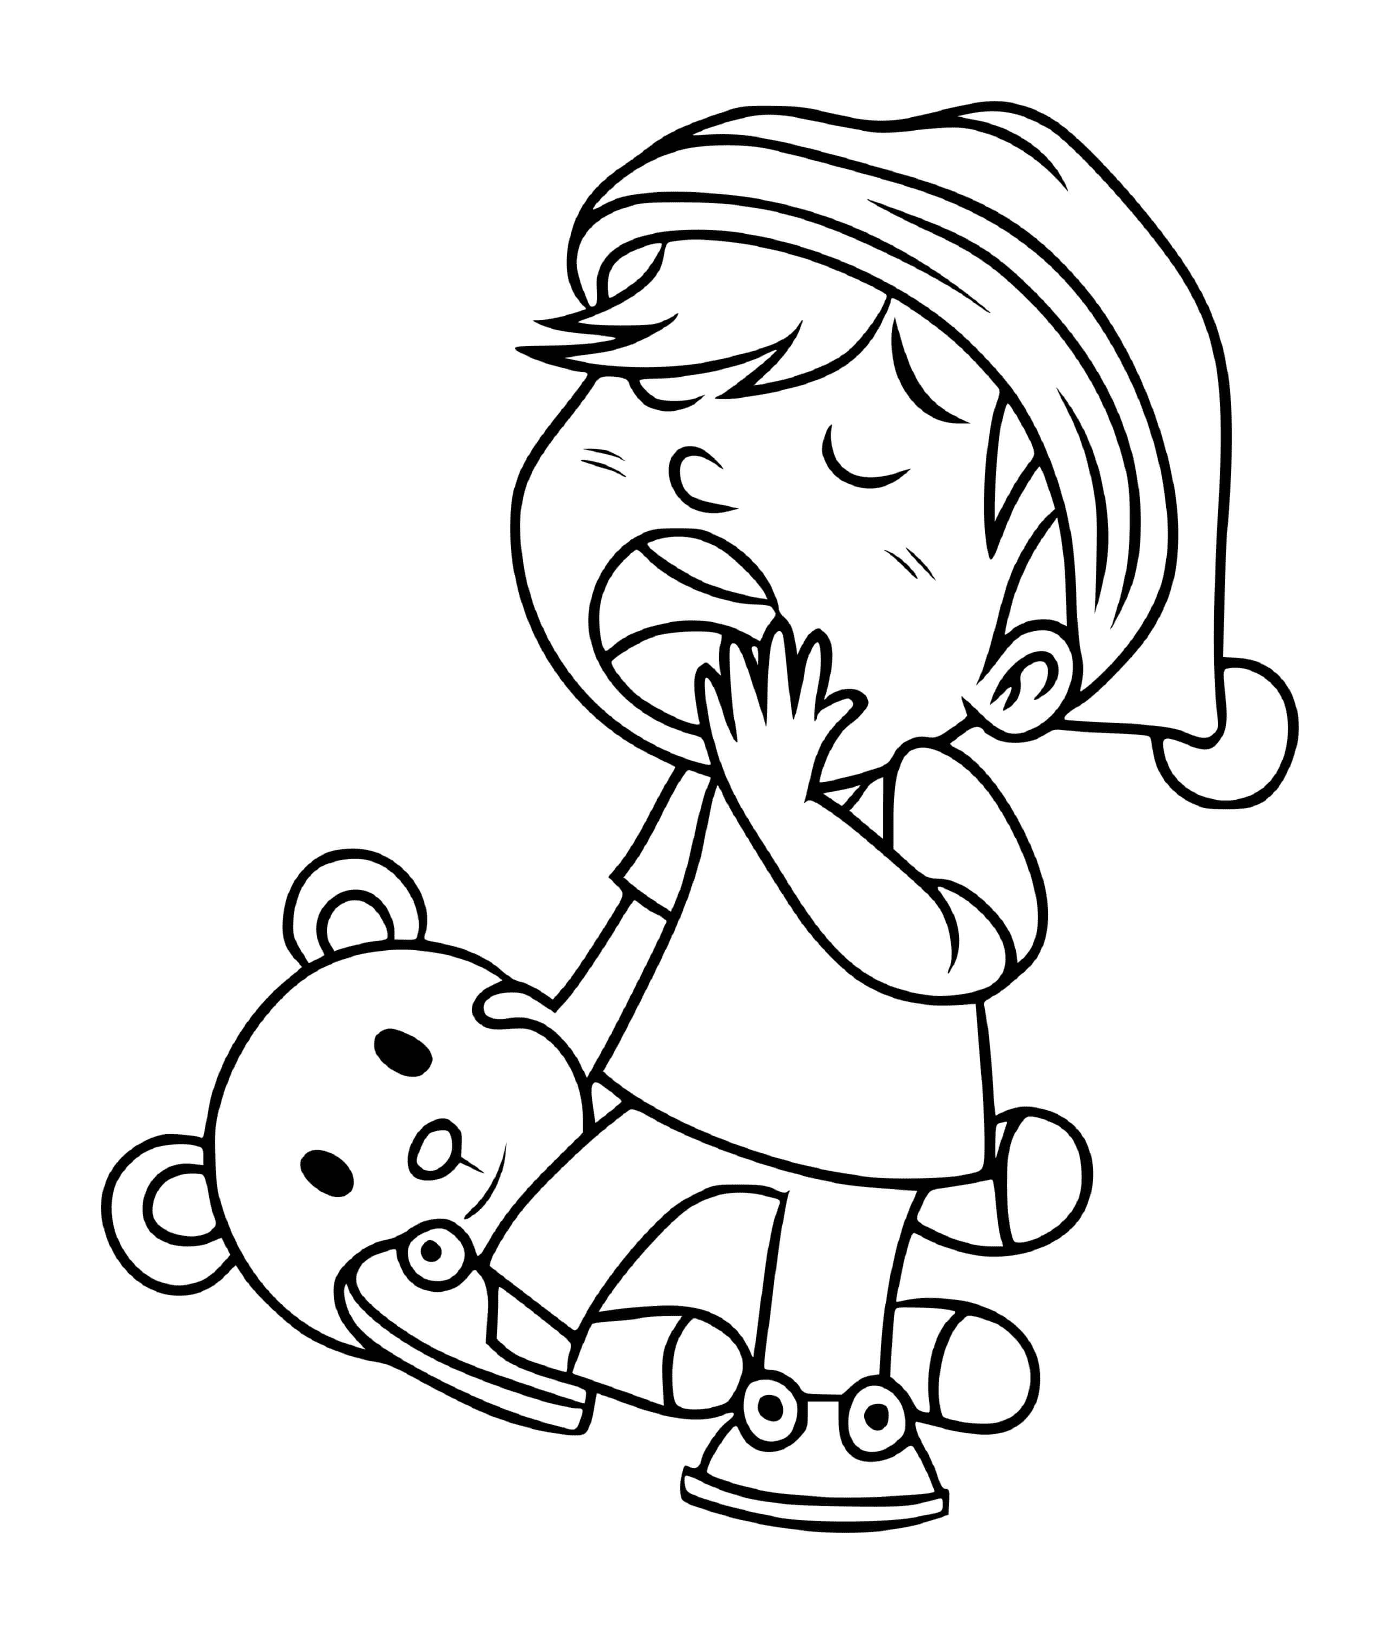  一个孩子推着她泰迪熊睡着 紧紧地拉紧她的泰迪熊 